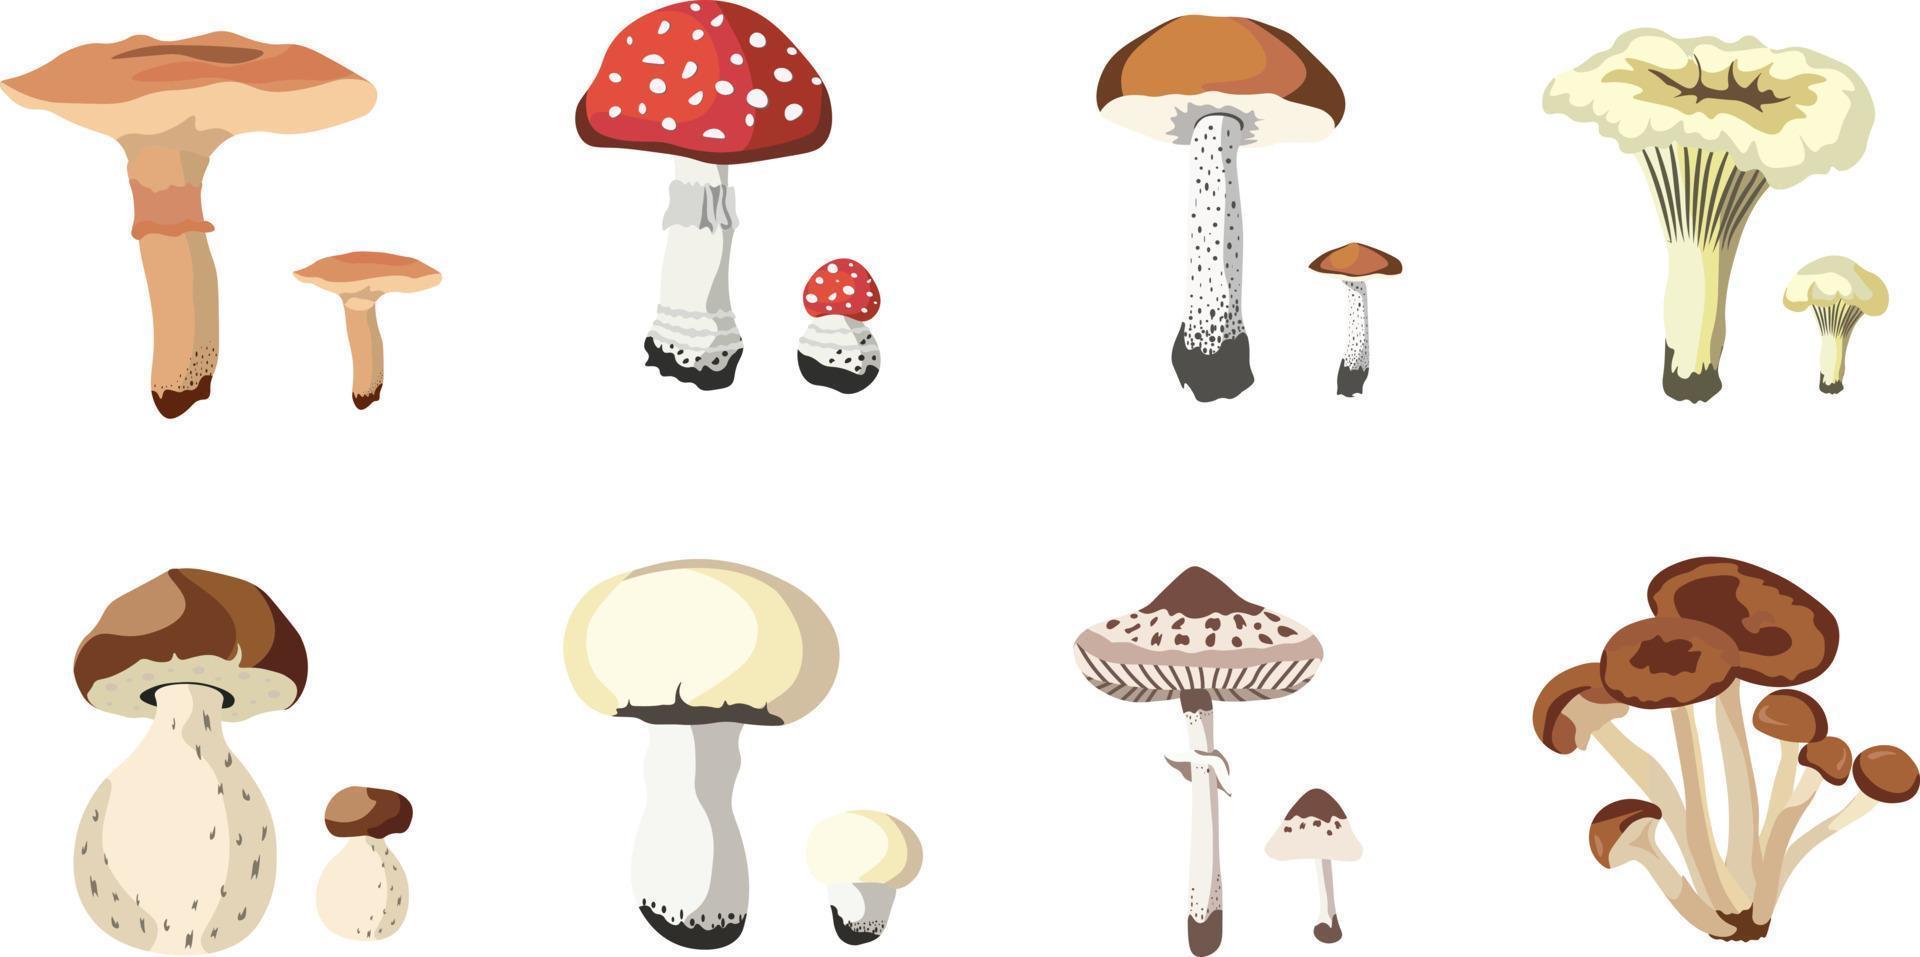 herfst champignons composities geïsoleerd vector illustratie Aan wit achtergrond